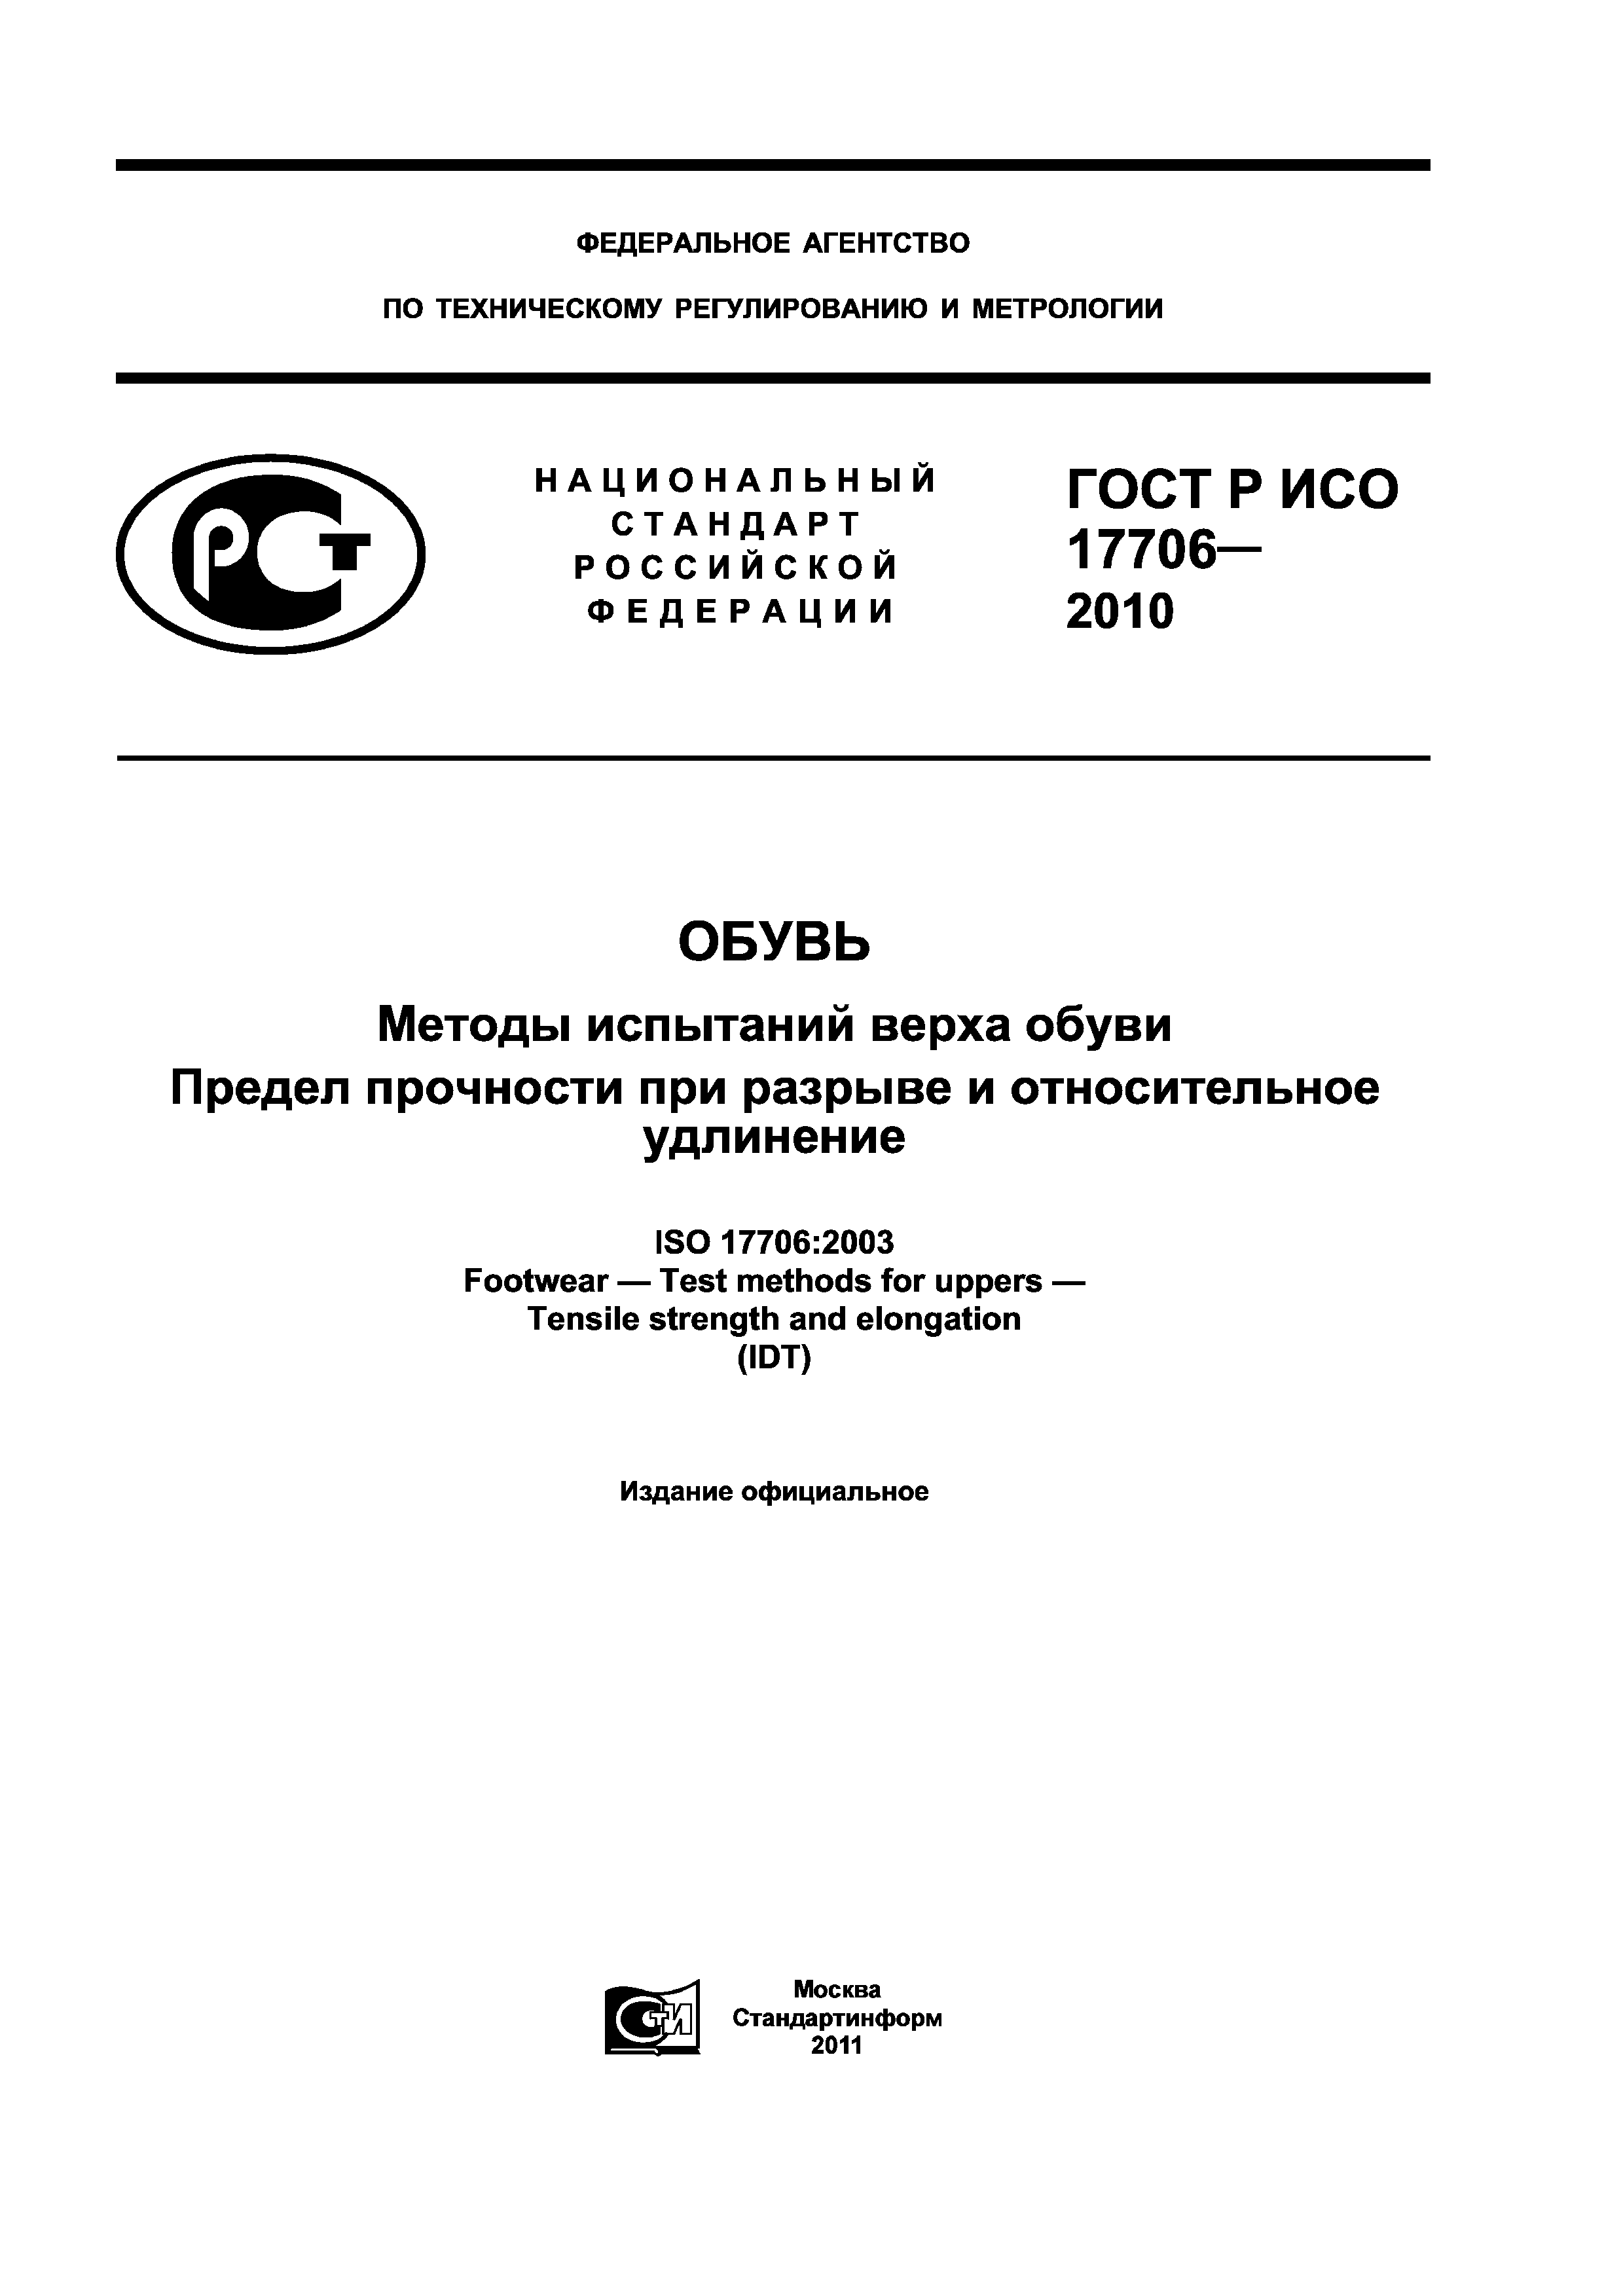 ГОСТ Р ИСО 17706-2010